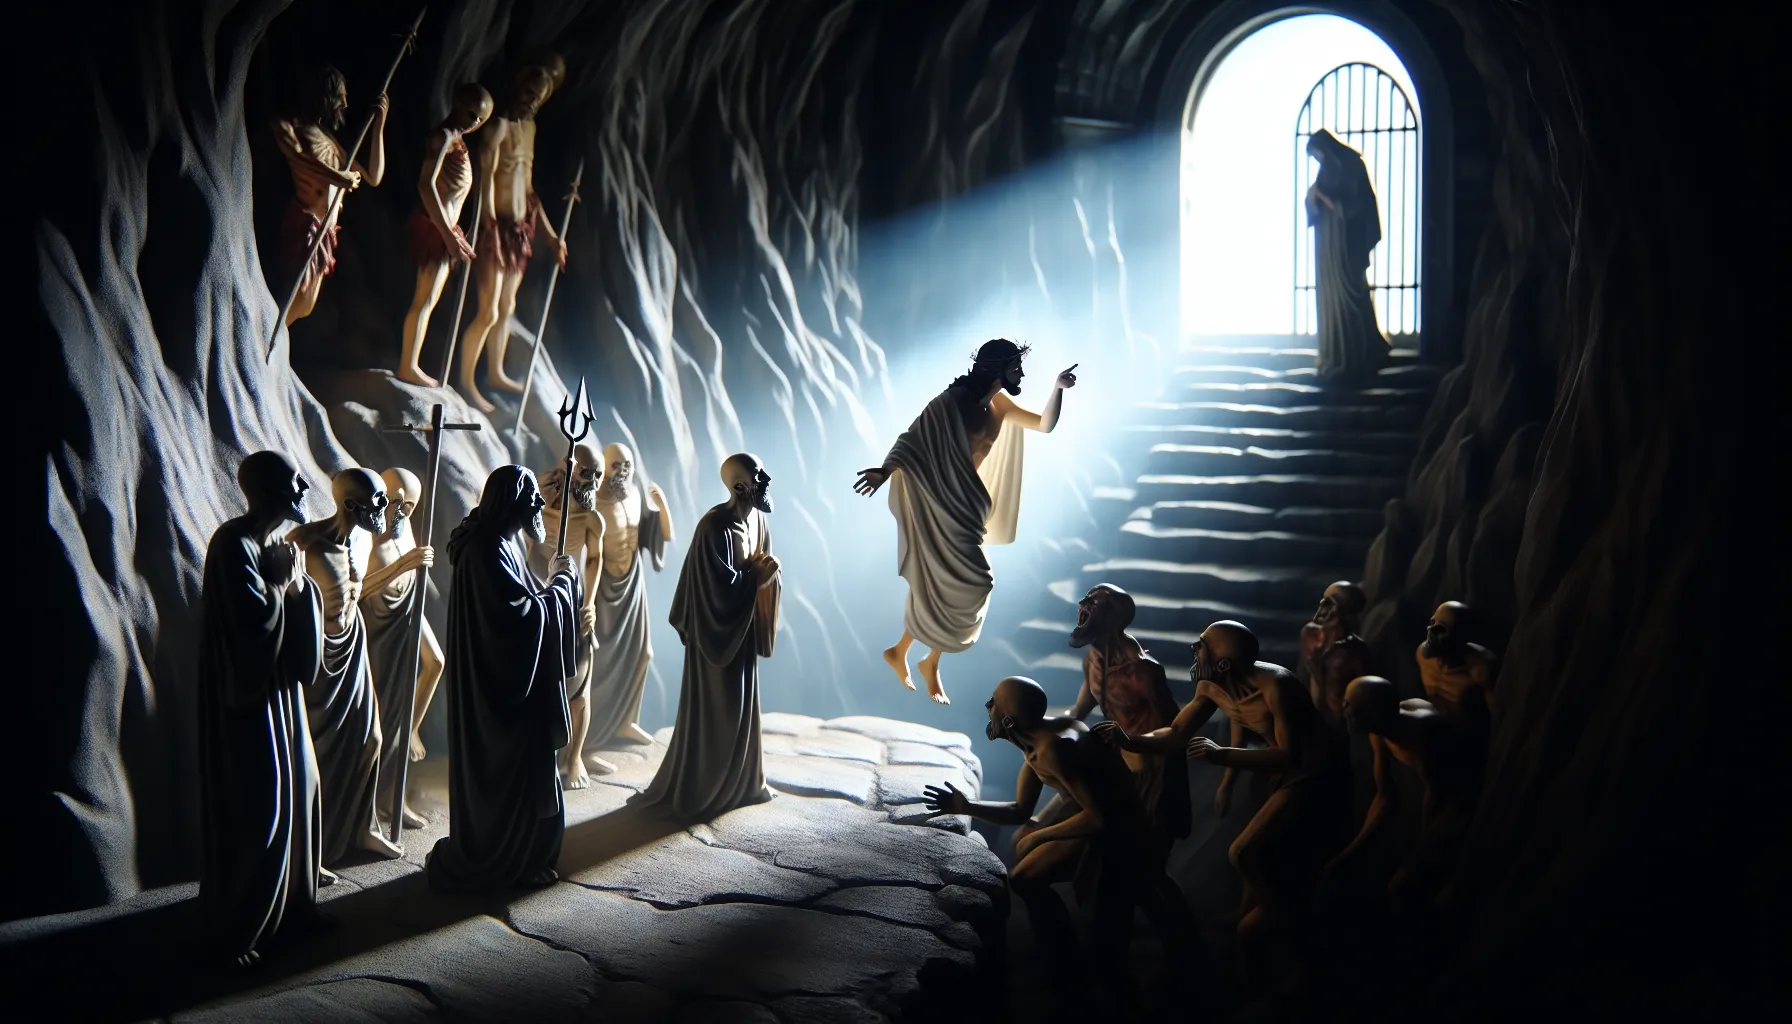 Representación artística de Jesús descendiendo al Infierno según la tradición cristiana